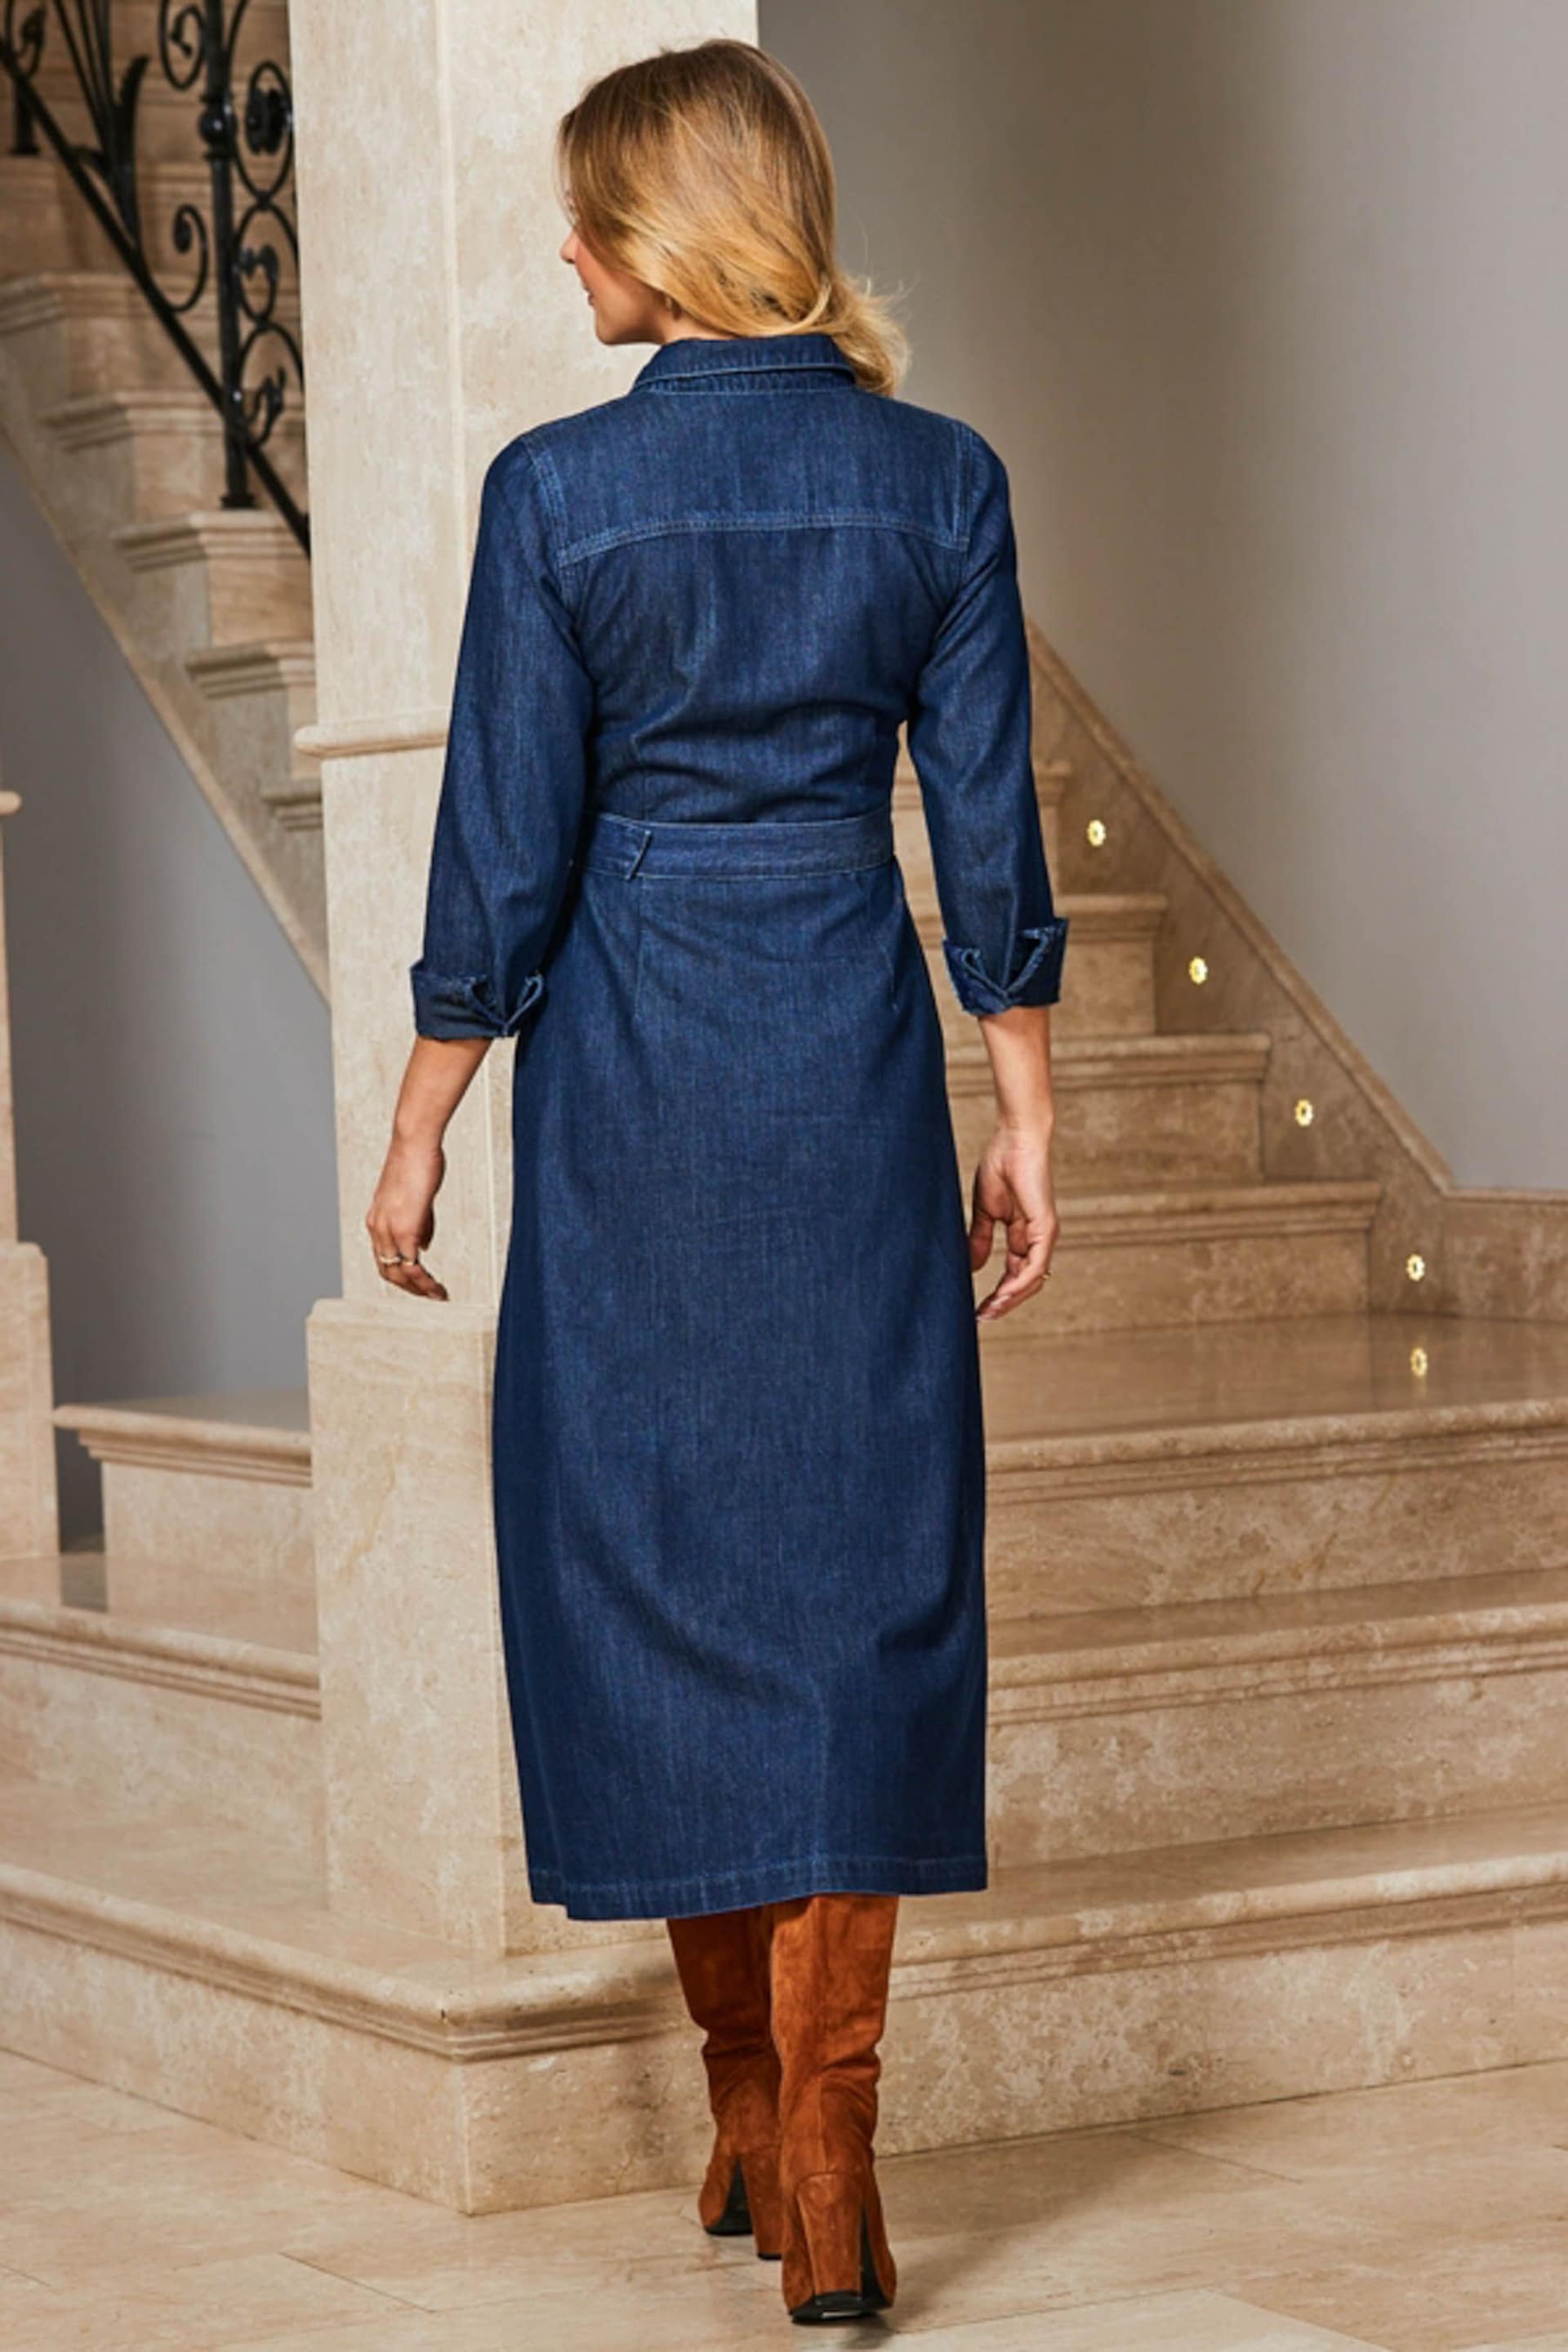 Sosandar Blue Smart Denim Fit N Flare Midaxi Dress - Image 2 of 5